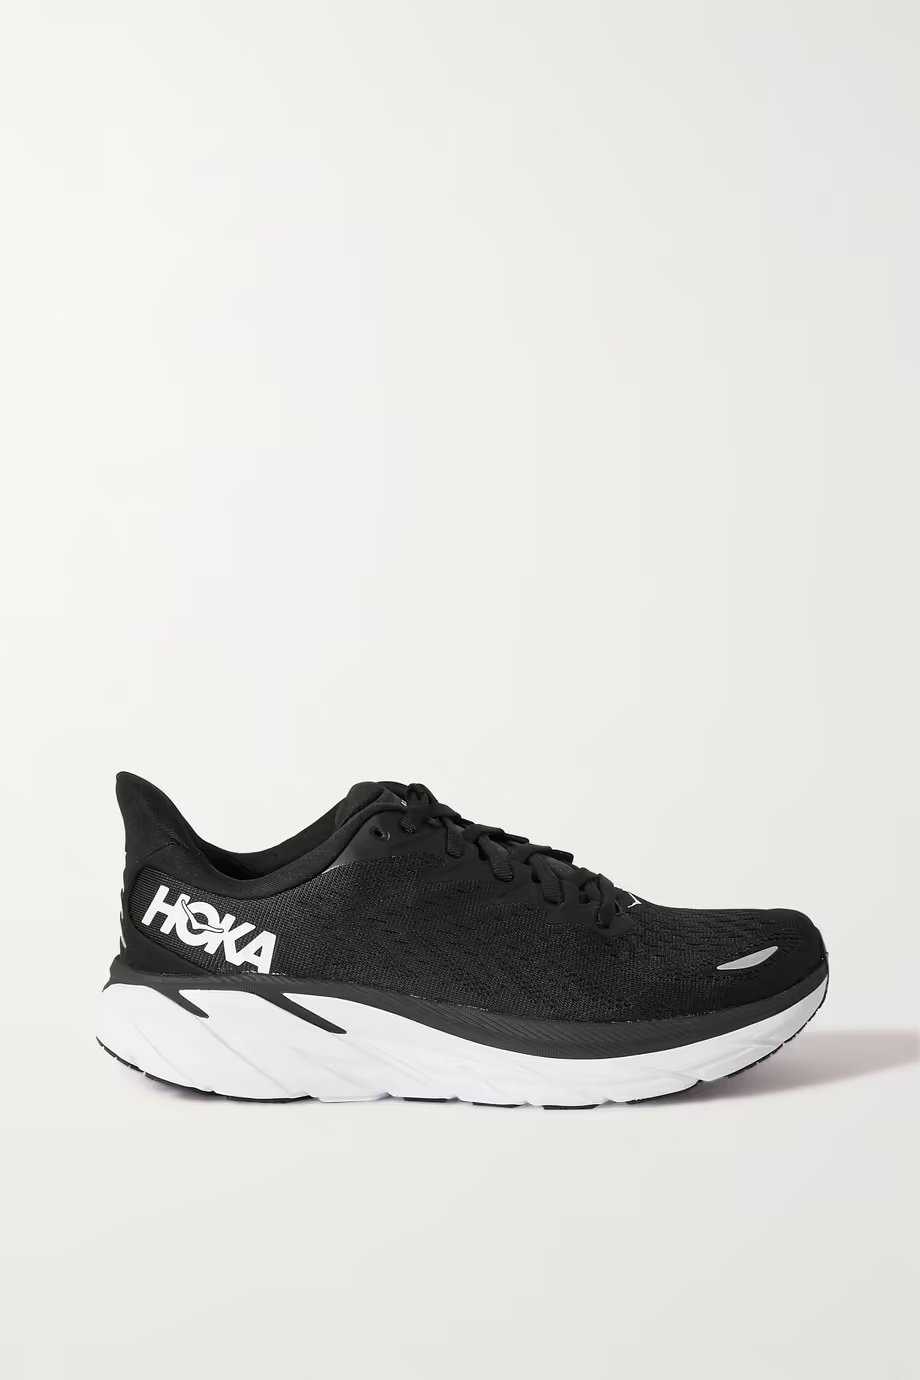 HOKA-ONE-ONE-Clifton-8-mesh-sneakers